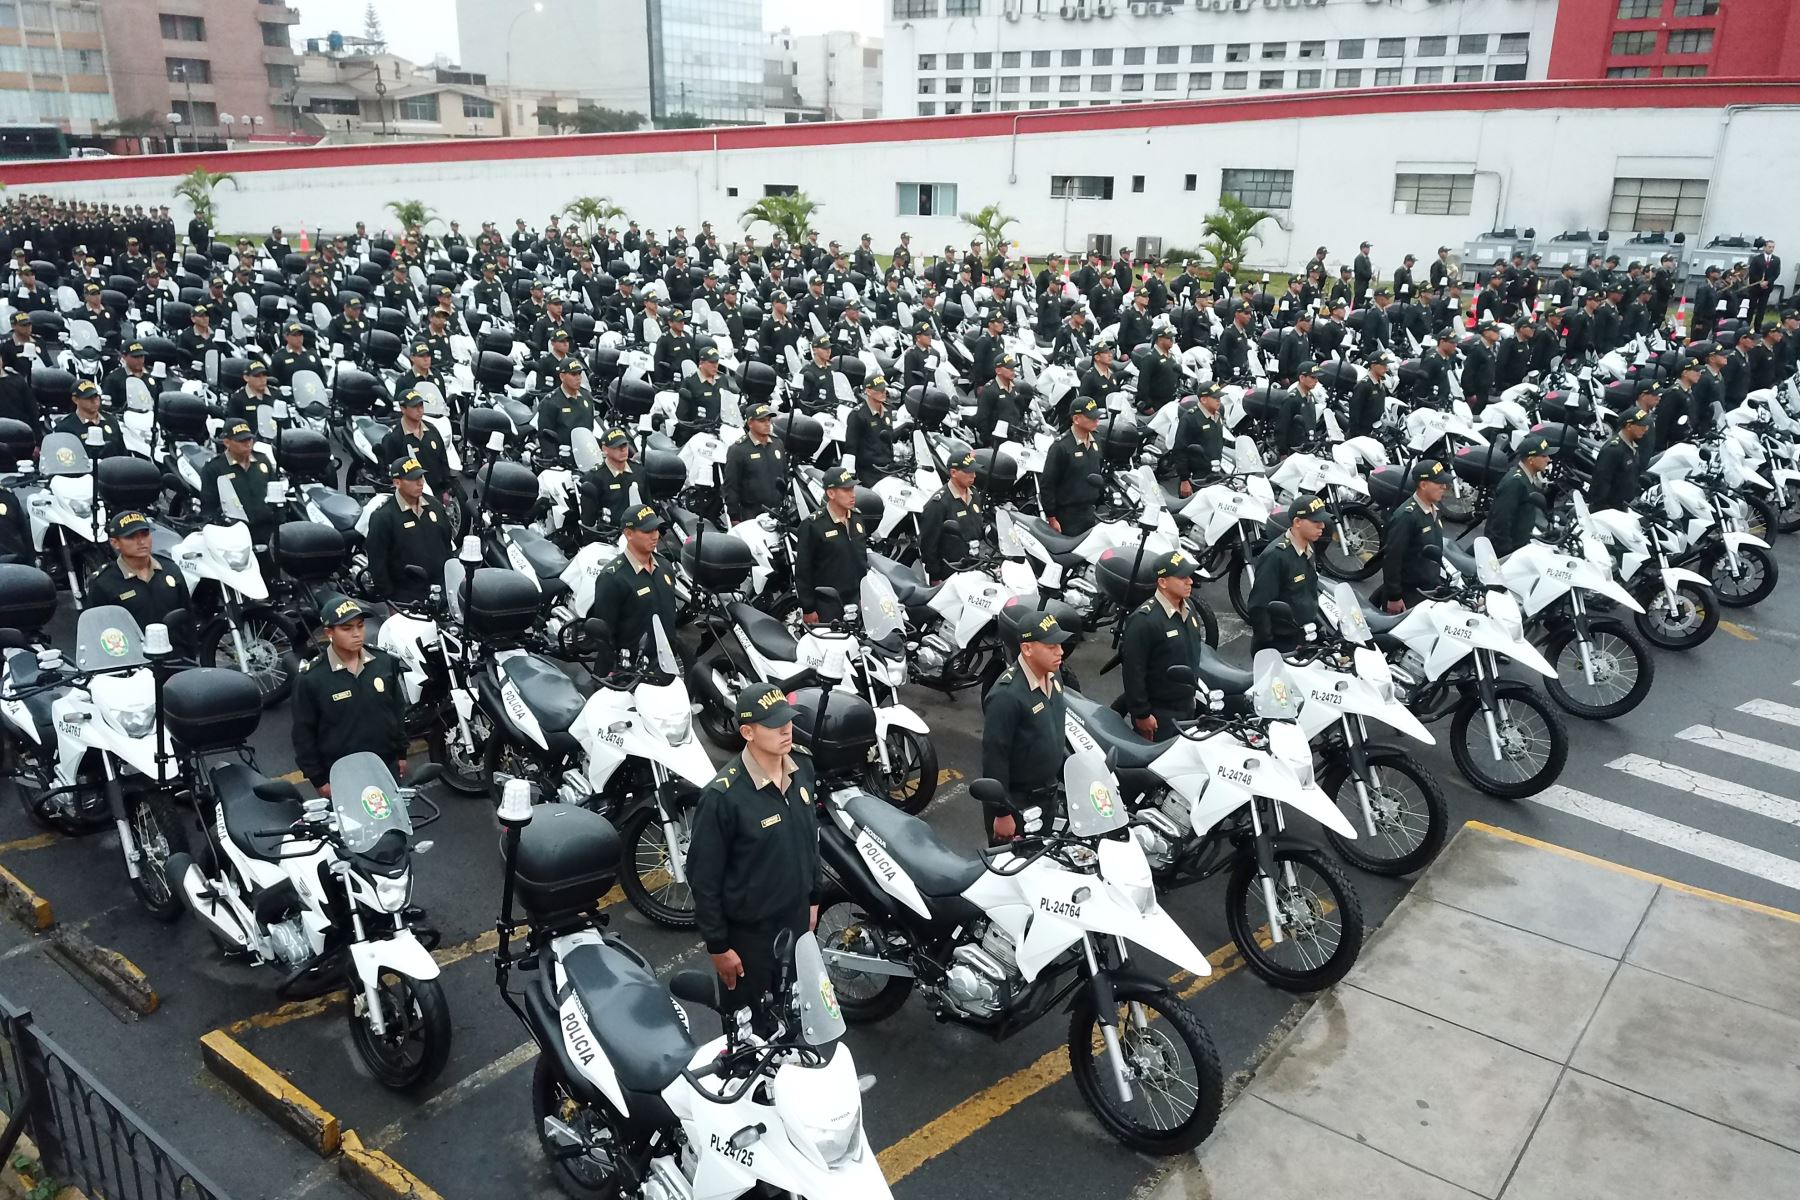 6,000 efectivos egresados de las escuelas policiales, que reforzarán la seguridad ciudadana a nivel nacional. Foto: ANDINA/ Juan Carlos Guzman